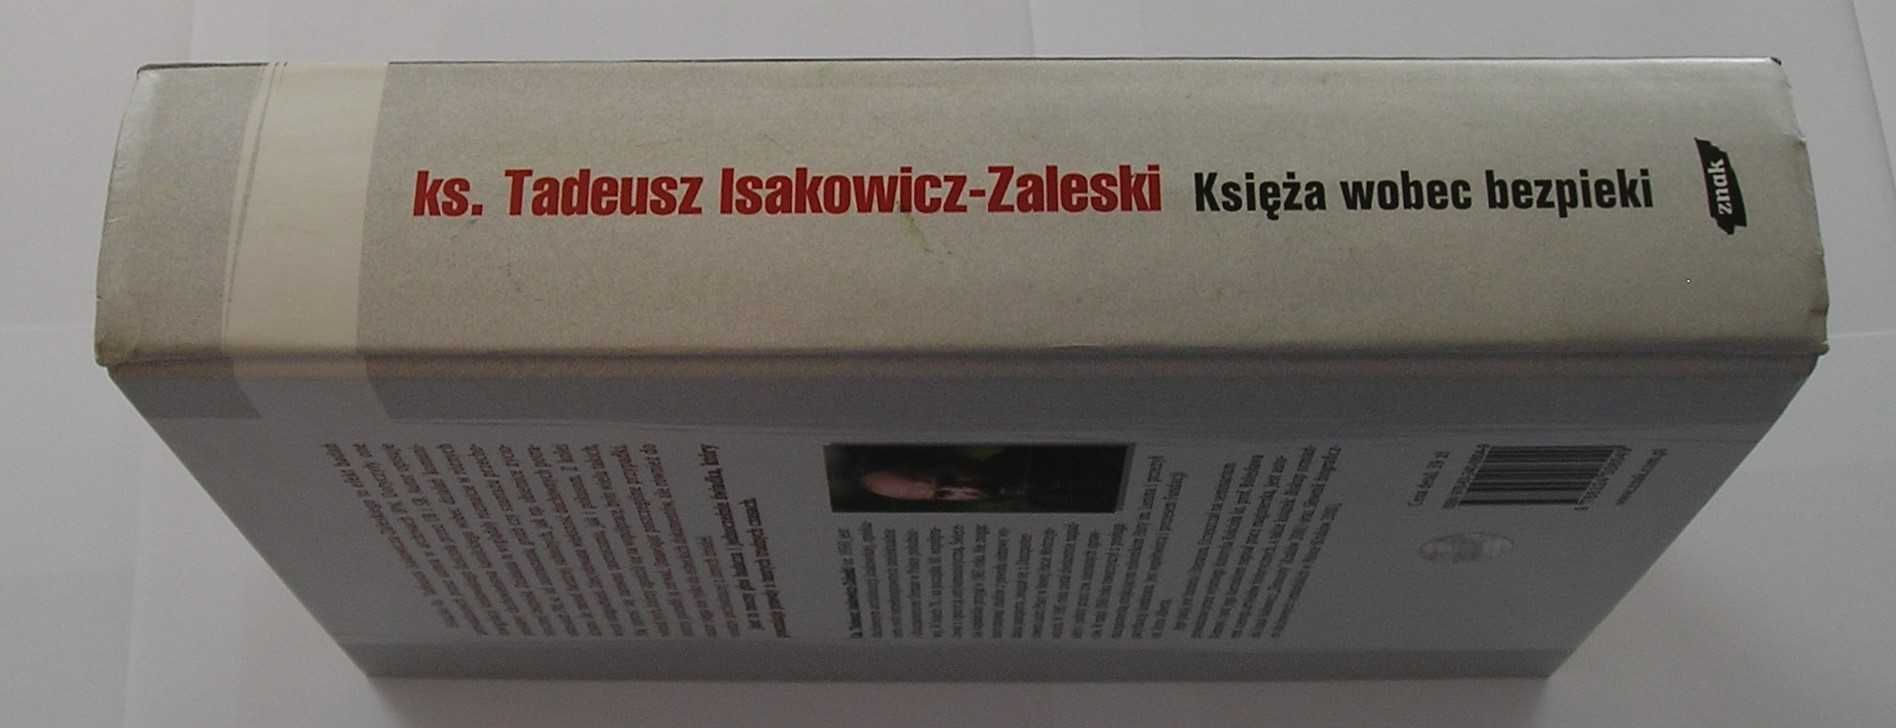 Księża wobec bezpieki - Tadeusz Isakowicz-Zaleski - 2007 - nowa